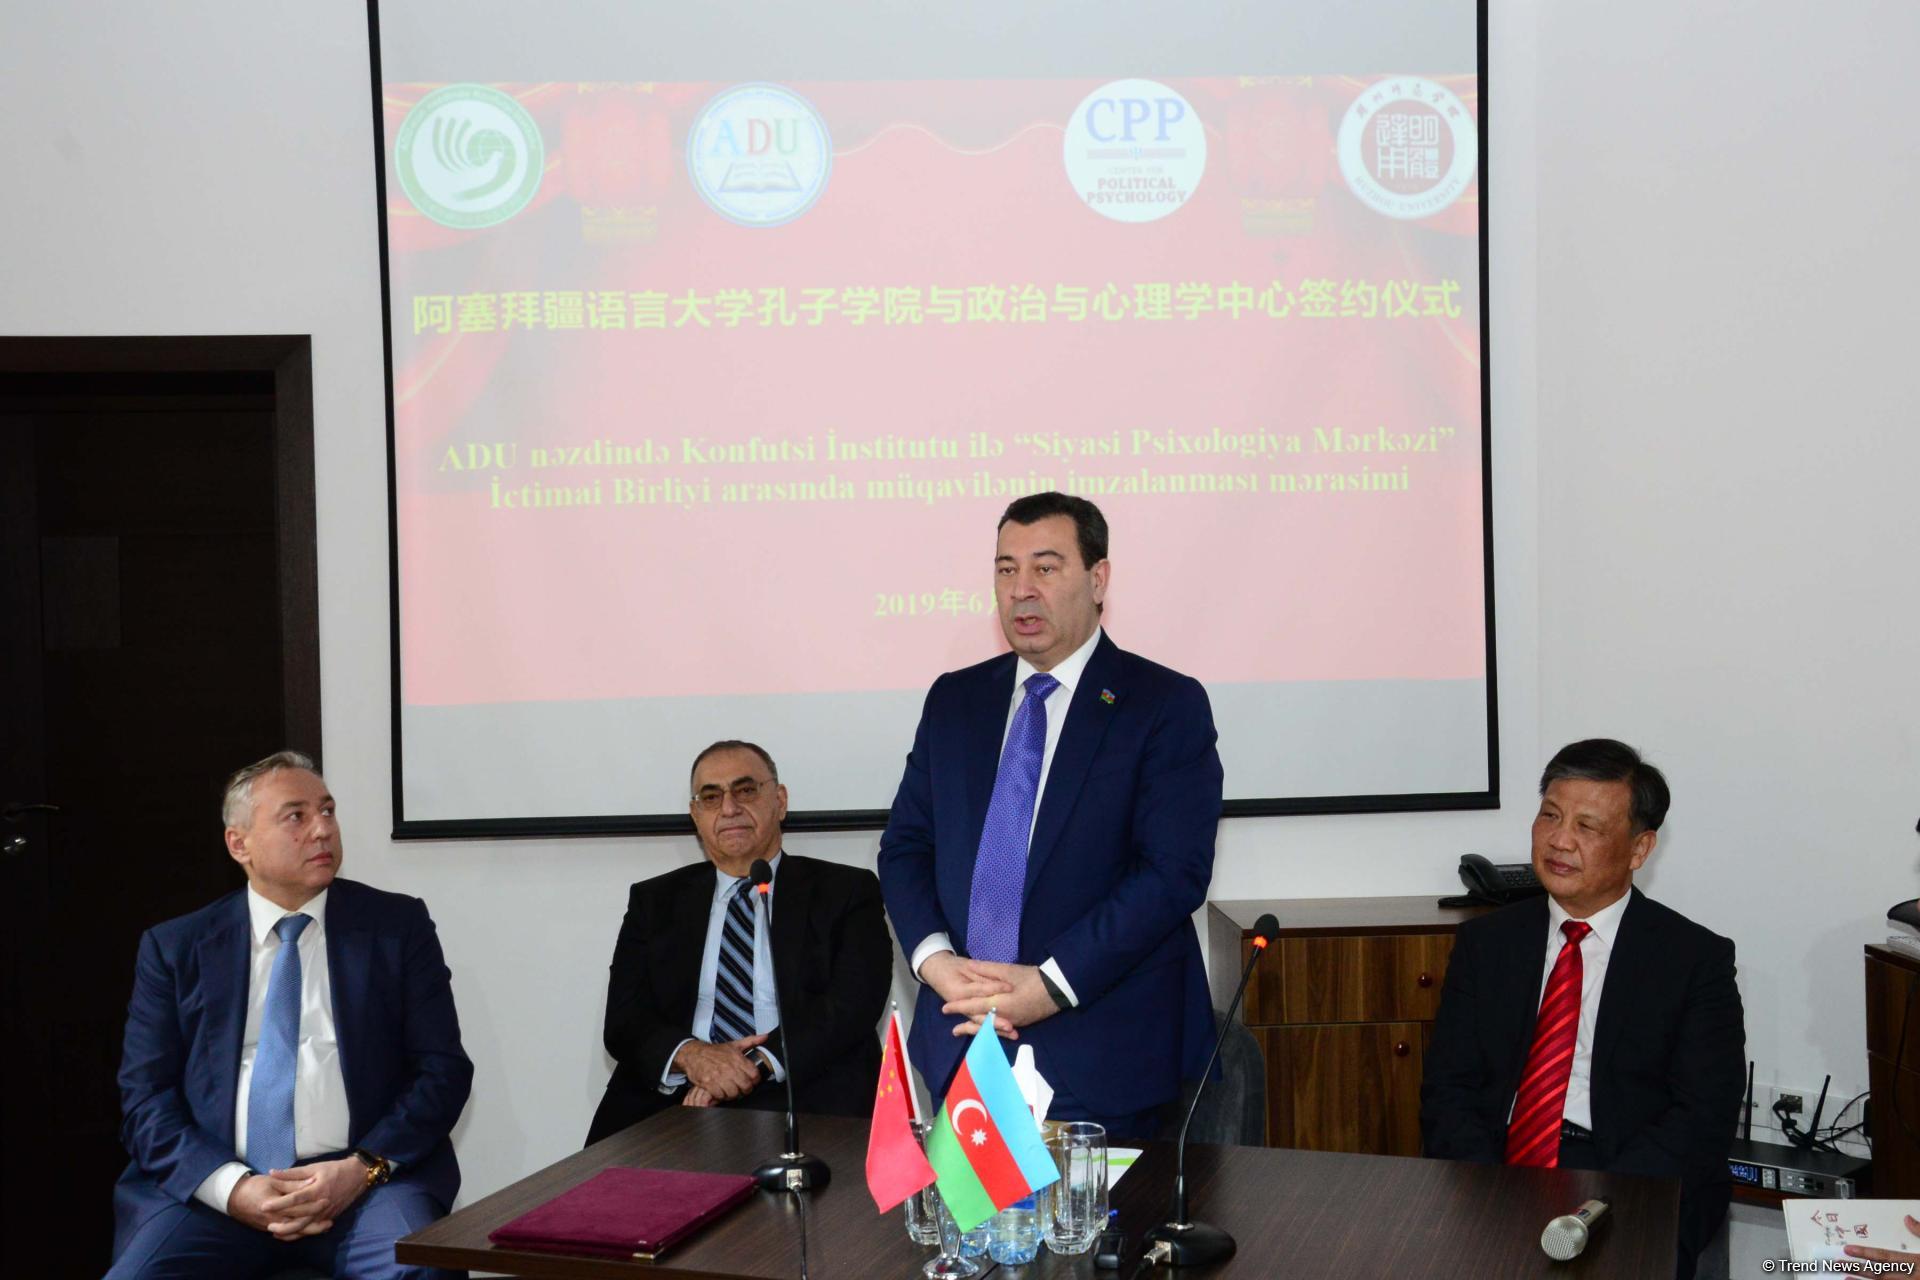 В Баку открылся Центр китайского языка и культуры (ФОТО)